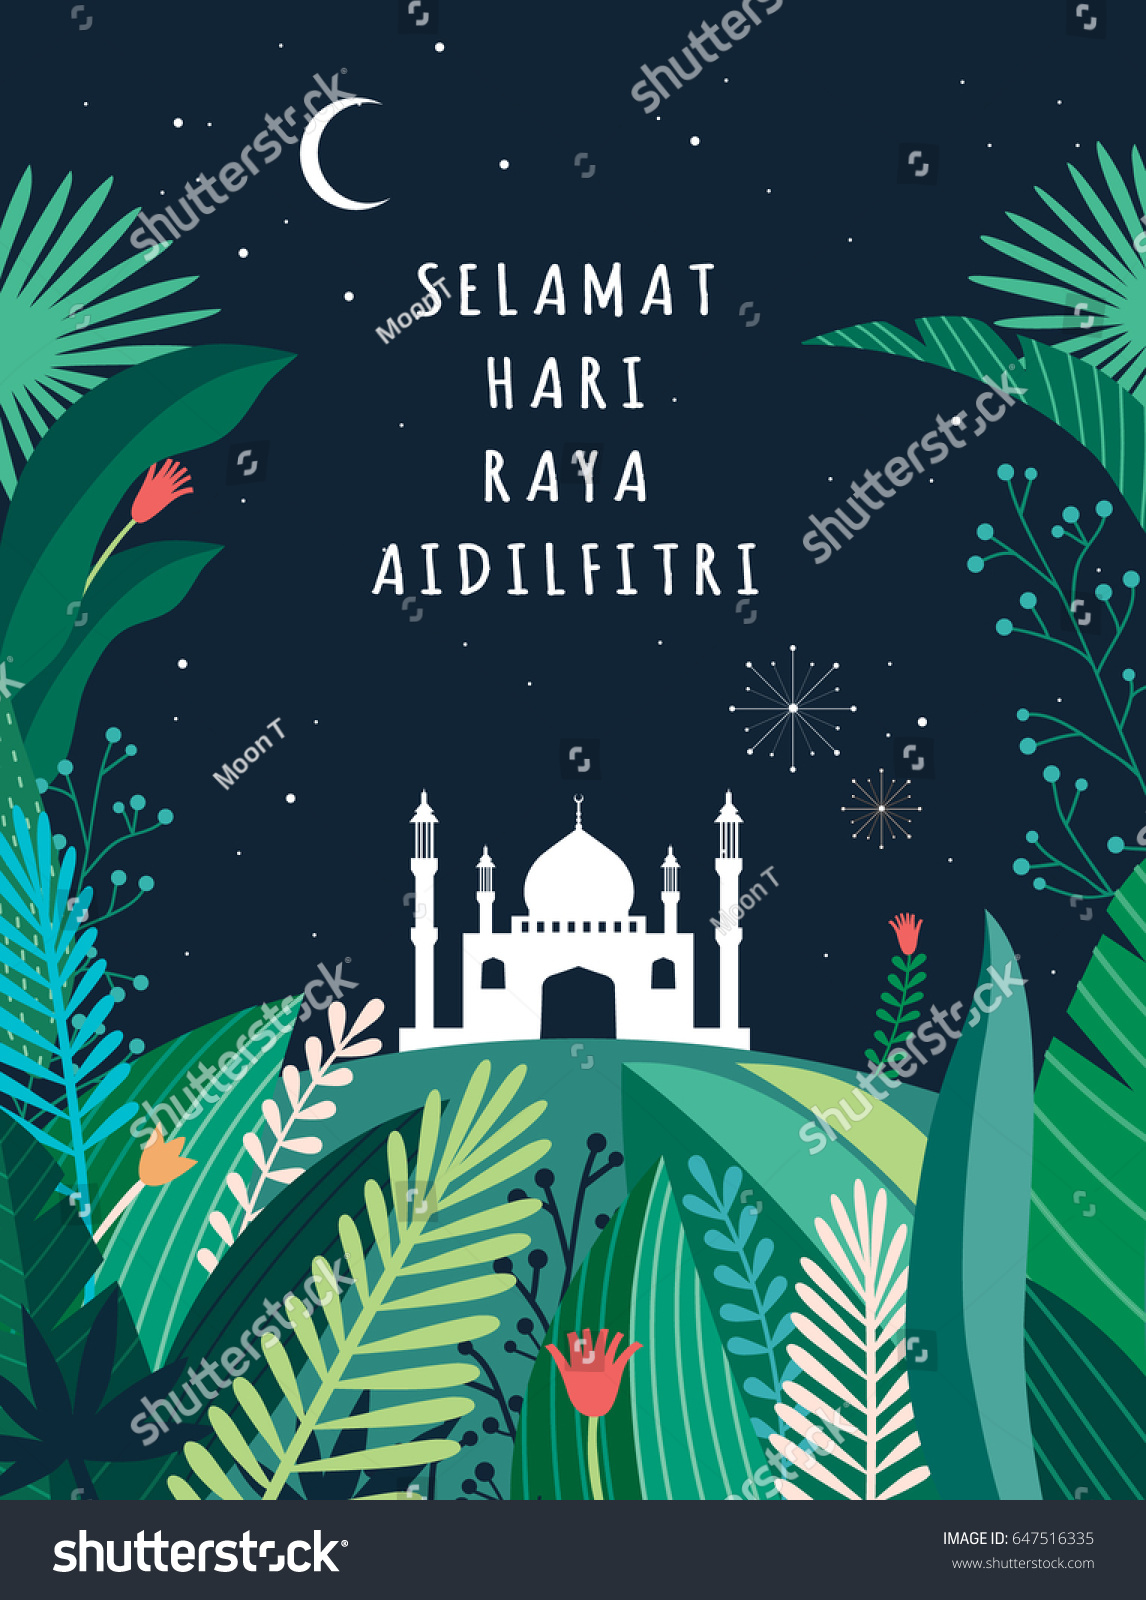 Ramadan wishes in malay